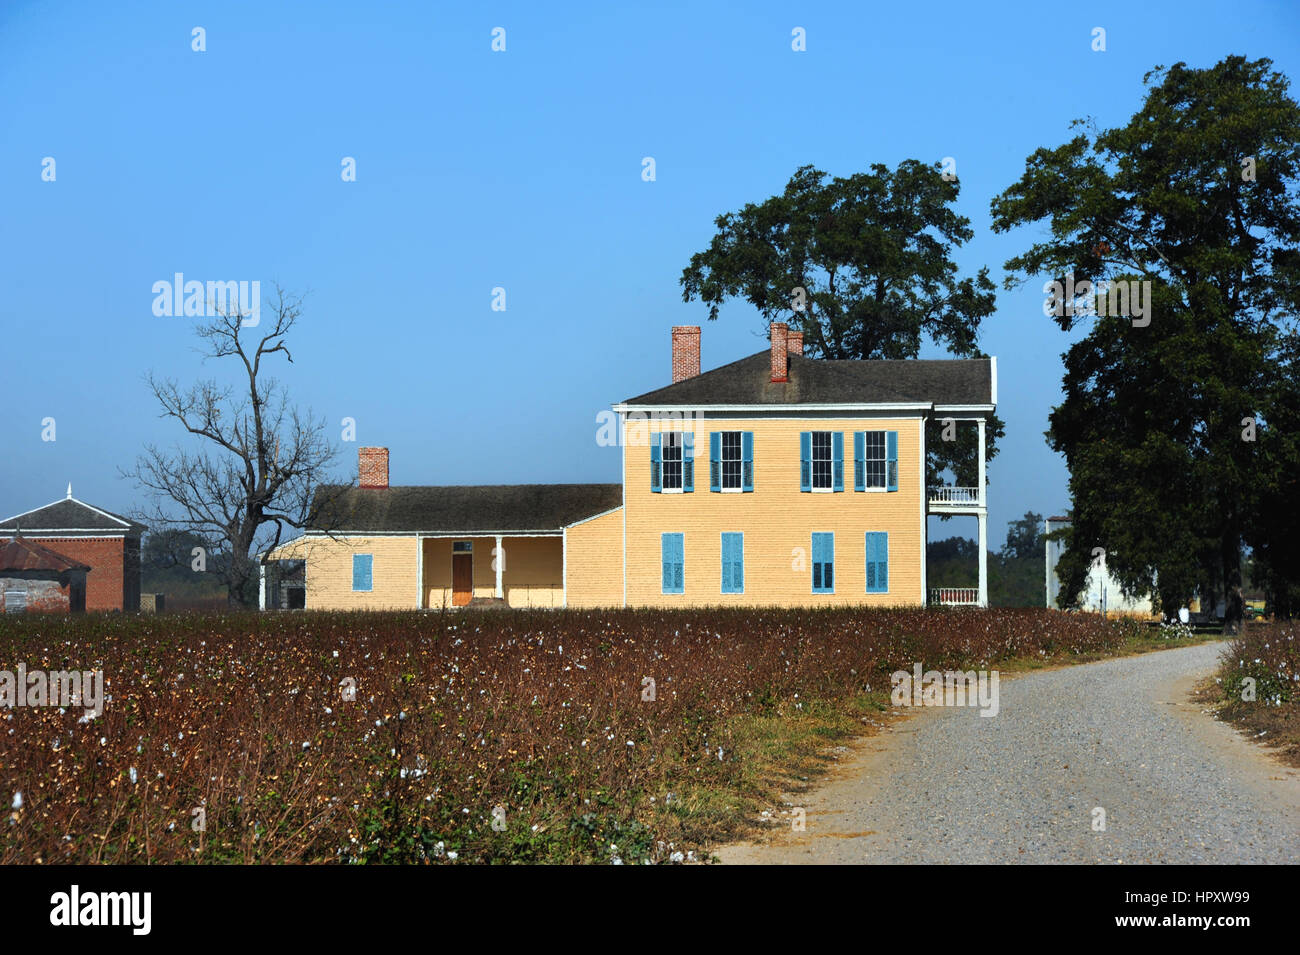 Straße führt zum Lakeport Plantage im Mississippi-Delta-Bereich von Arkansas.  Zweistöckigen Haus ist aus Holz und lackiert gelb mit blauen Fensterläden. Stockfoto